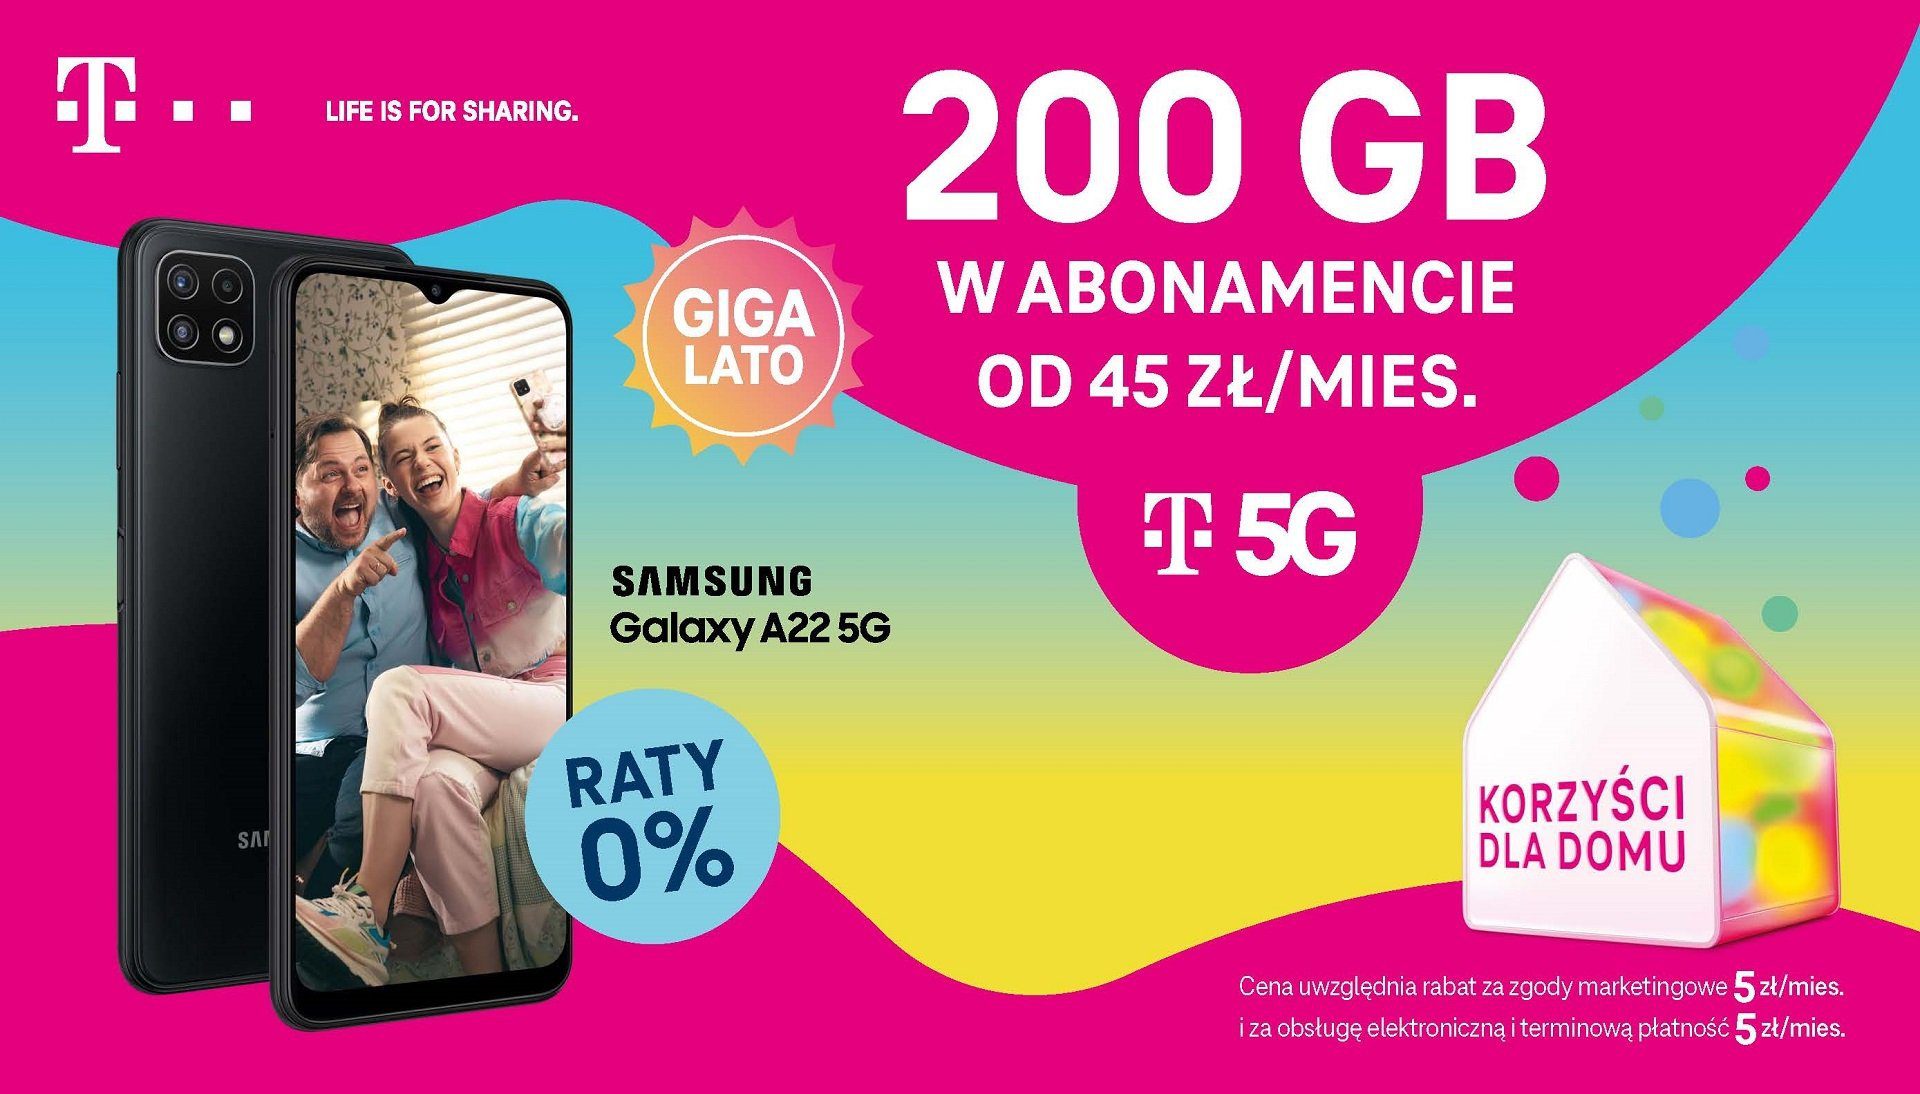 GIGAlato bei T-Mobile - bis zu 200 GB 5G-Internet ab 45 PLN pro Monat 305